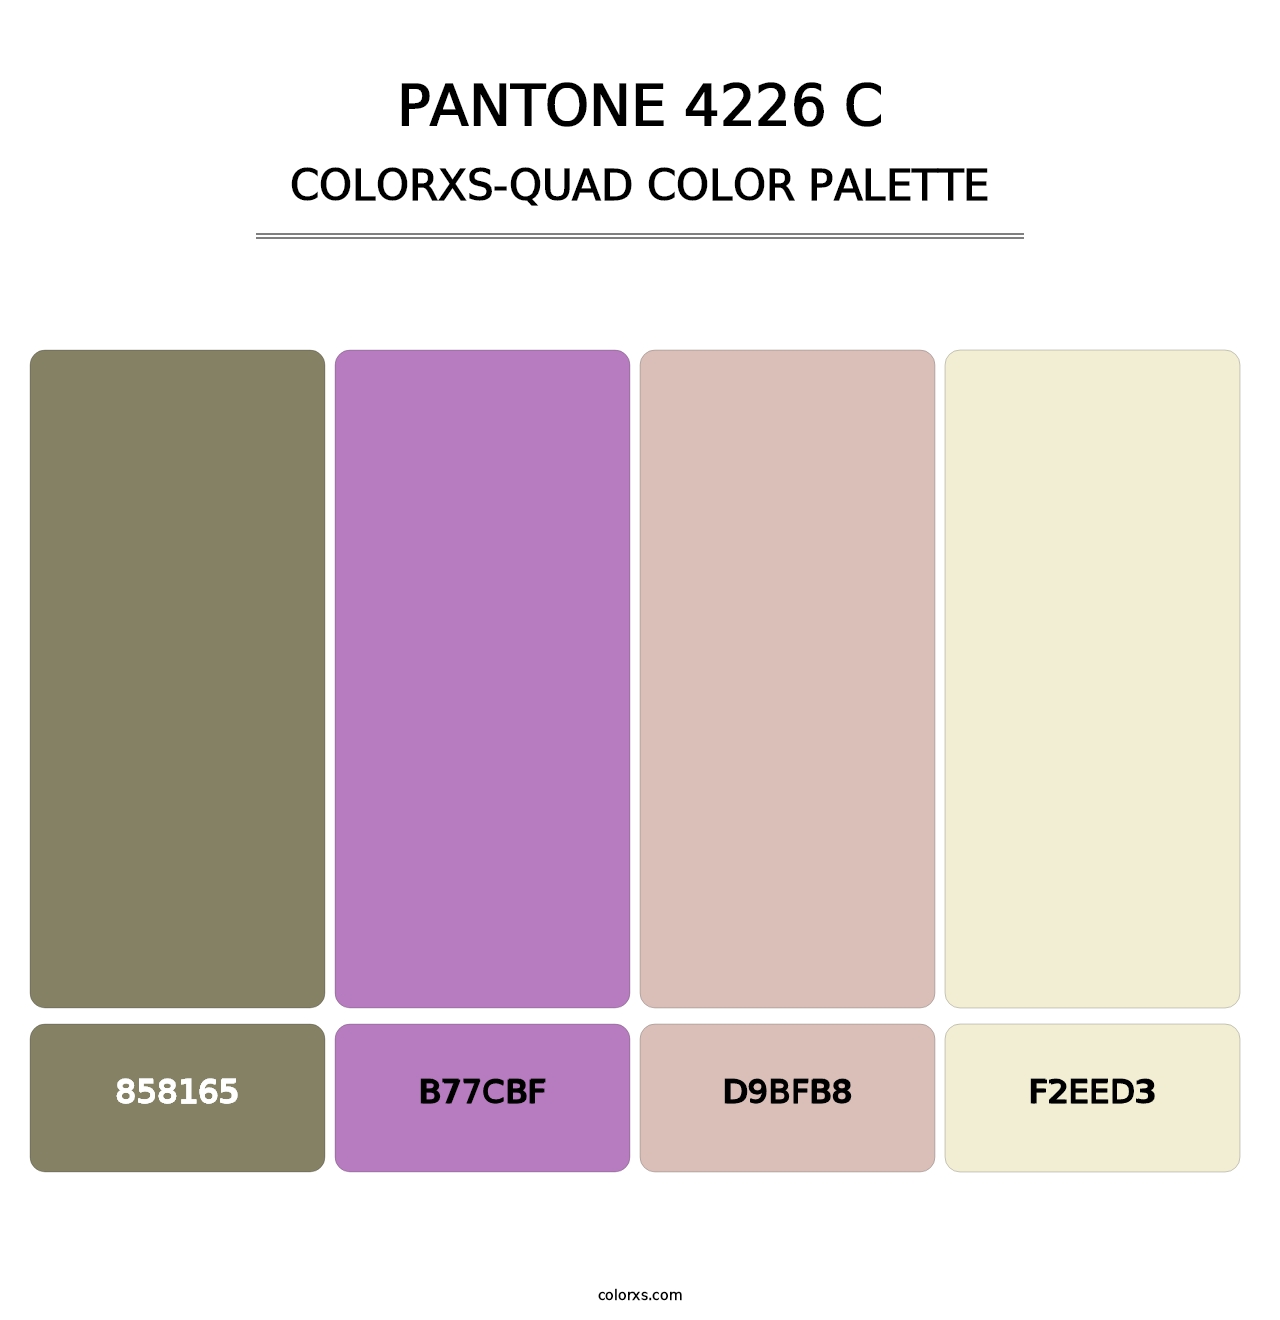 PANTONE 4226 C - Colorxs Quad Palette